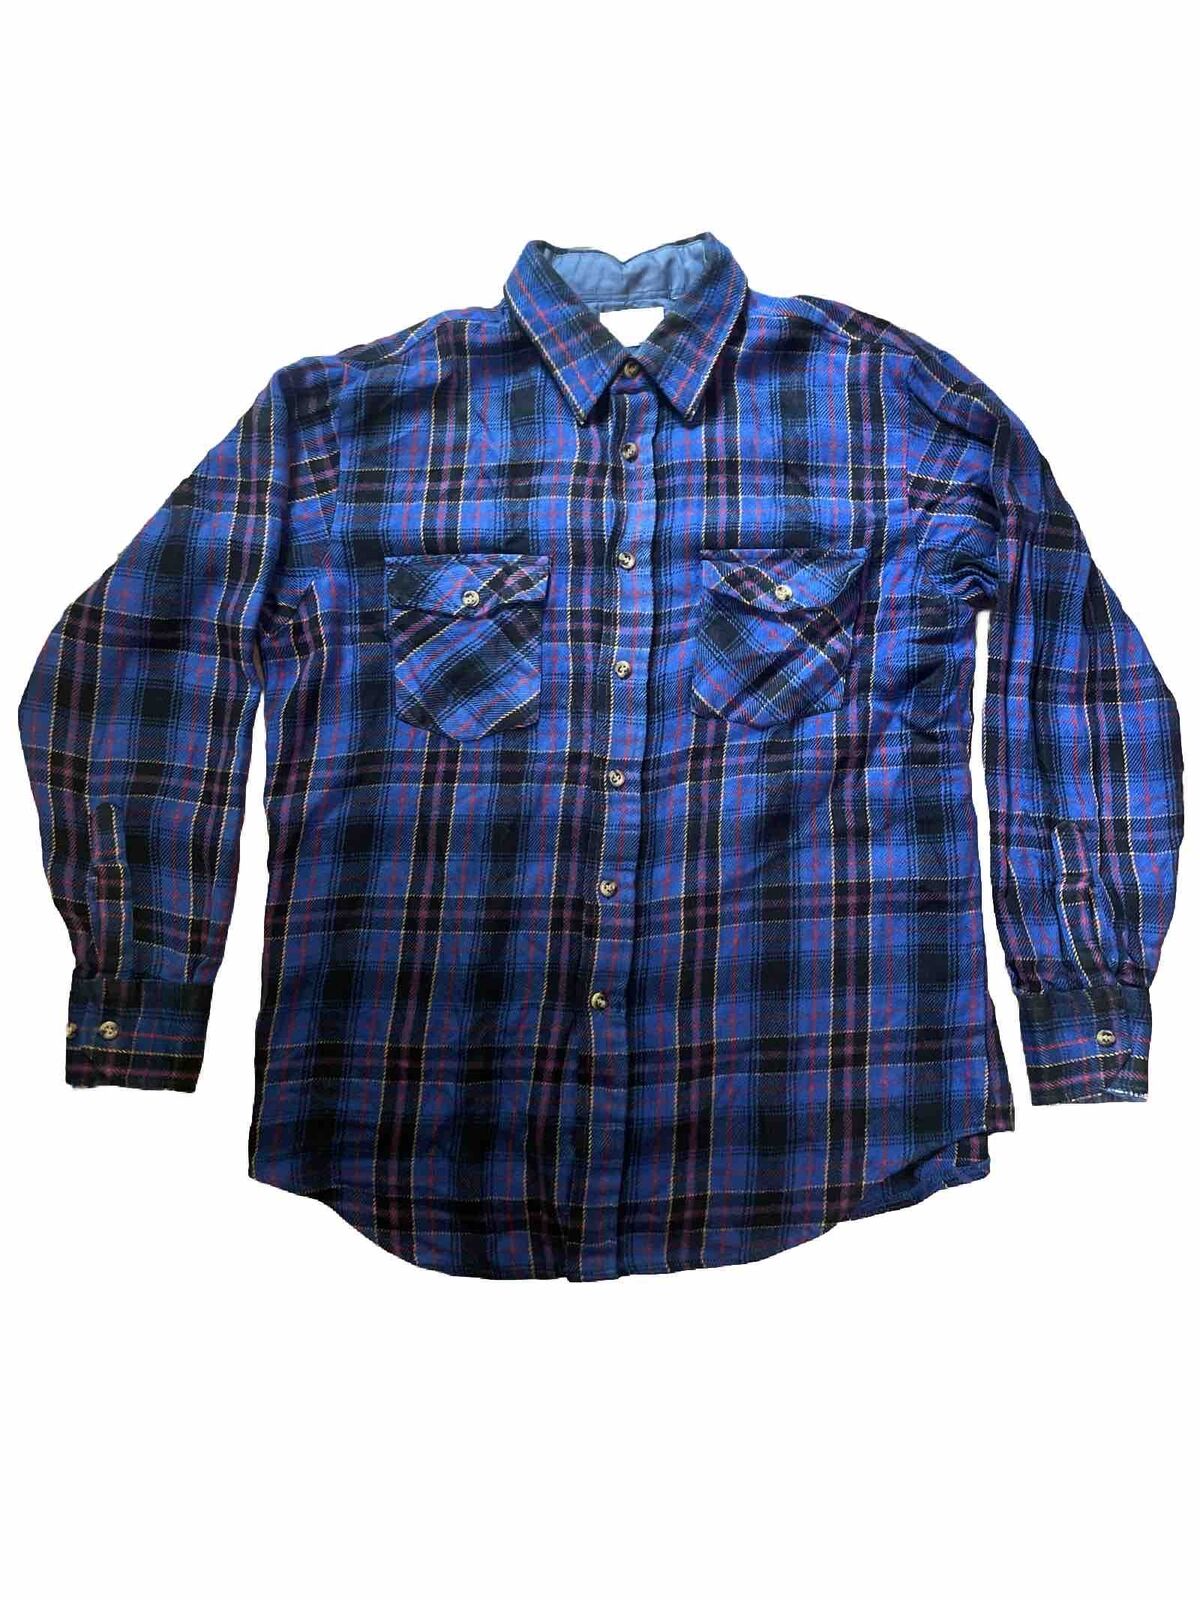 Vintage 70s Sears Mens Store Flannel Shirt Men\'s Size Large Blue Plaid